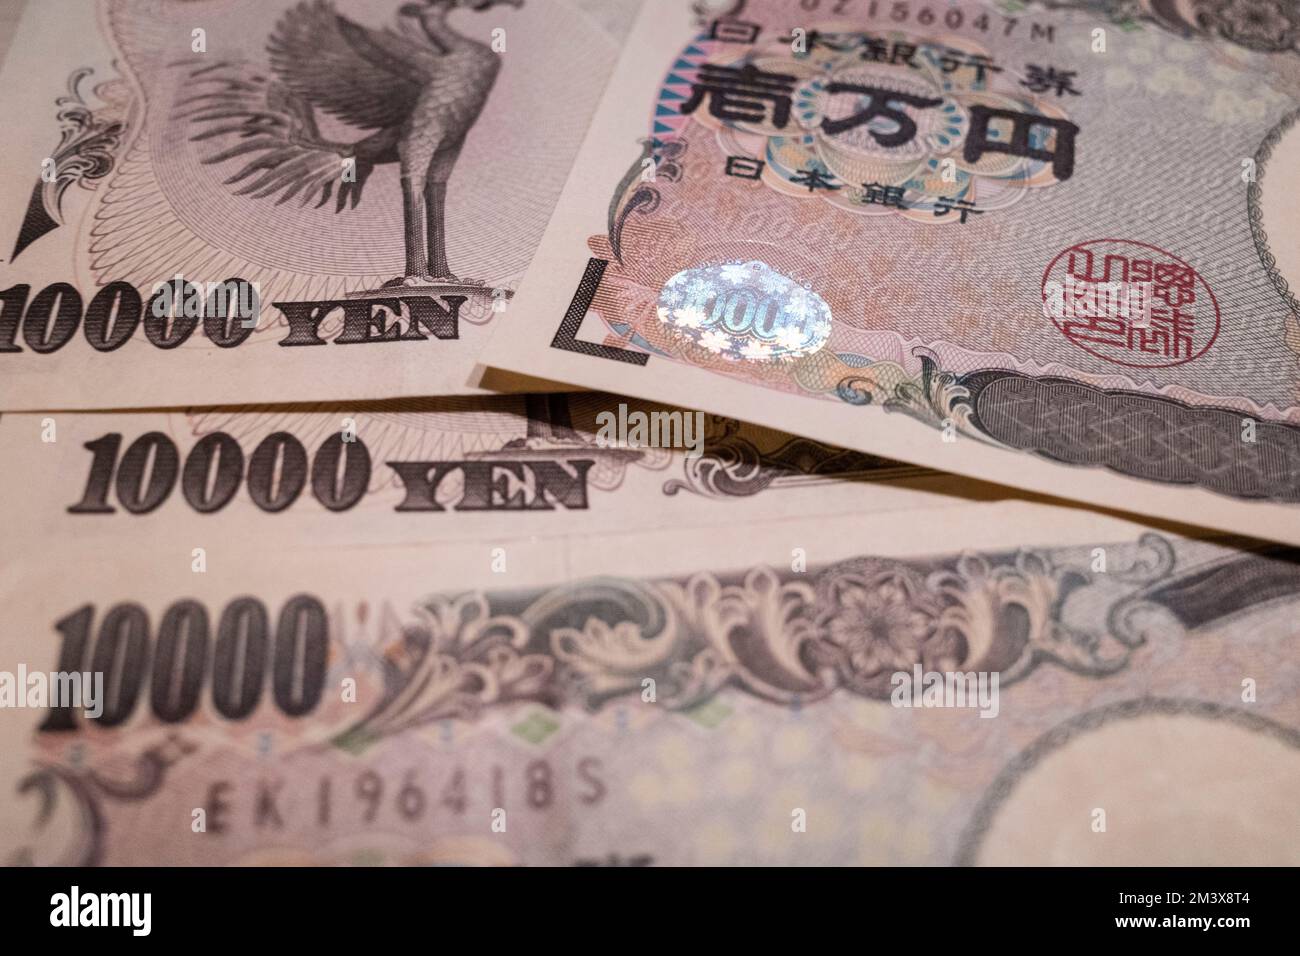 11 dicembre 2022, Tokyo, Giappone: 10.000 banconote giapponesi Yen Â emesse dalla Banca del Giappone (Nippon Ginko) con Samurai e Meiji, educatore dell'era della riforma Fukuzawa Yukichi. Lo Yen giapponese è la terza valuta forex più scambiata al mondo e comunemente detenuta come valuta di riserva dopo il dollaro statunitense (USD $) e l'euro (EUR). Recentemente in mezzo ad un'inflazione elevata negli Stati Uniti, spingendo la Federal Reserve degli Stati Uniti ad aumentare i tassi di interesse, inviando il valore degli Stati Uniti Il dollaro alle stelle contro le valute estere ha svalutato lo Yen, causando inflazione a cascata in Giappone a causa della re del paese Foto Stock